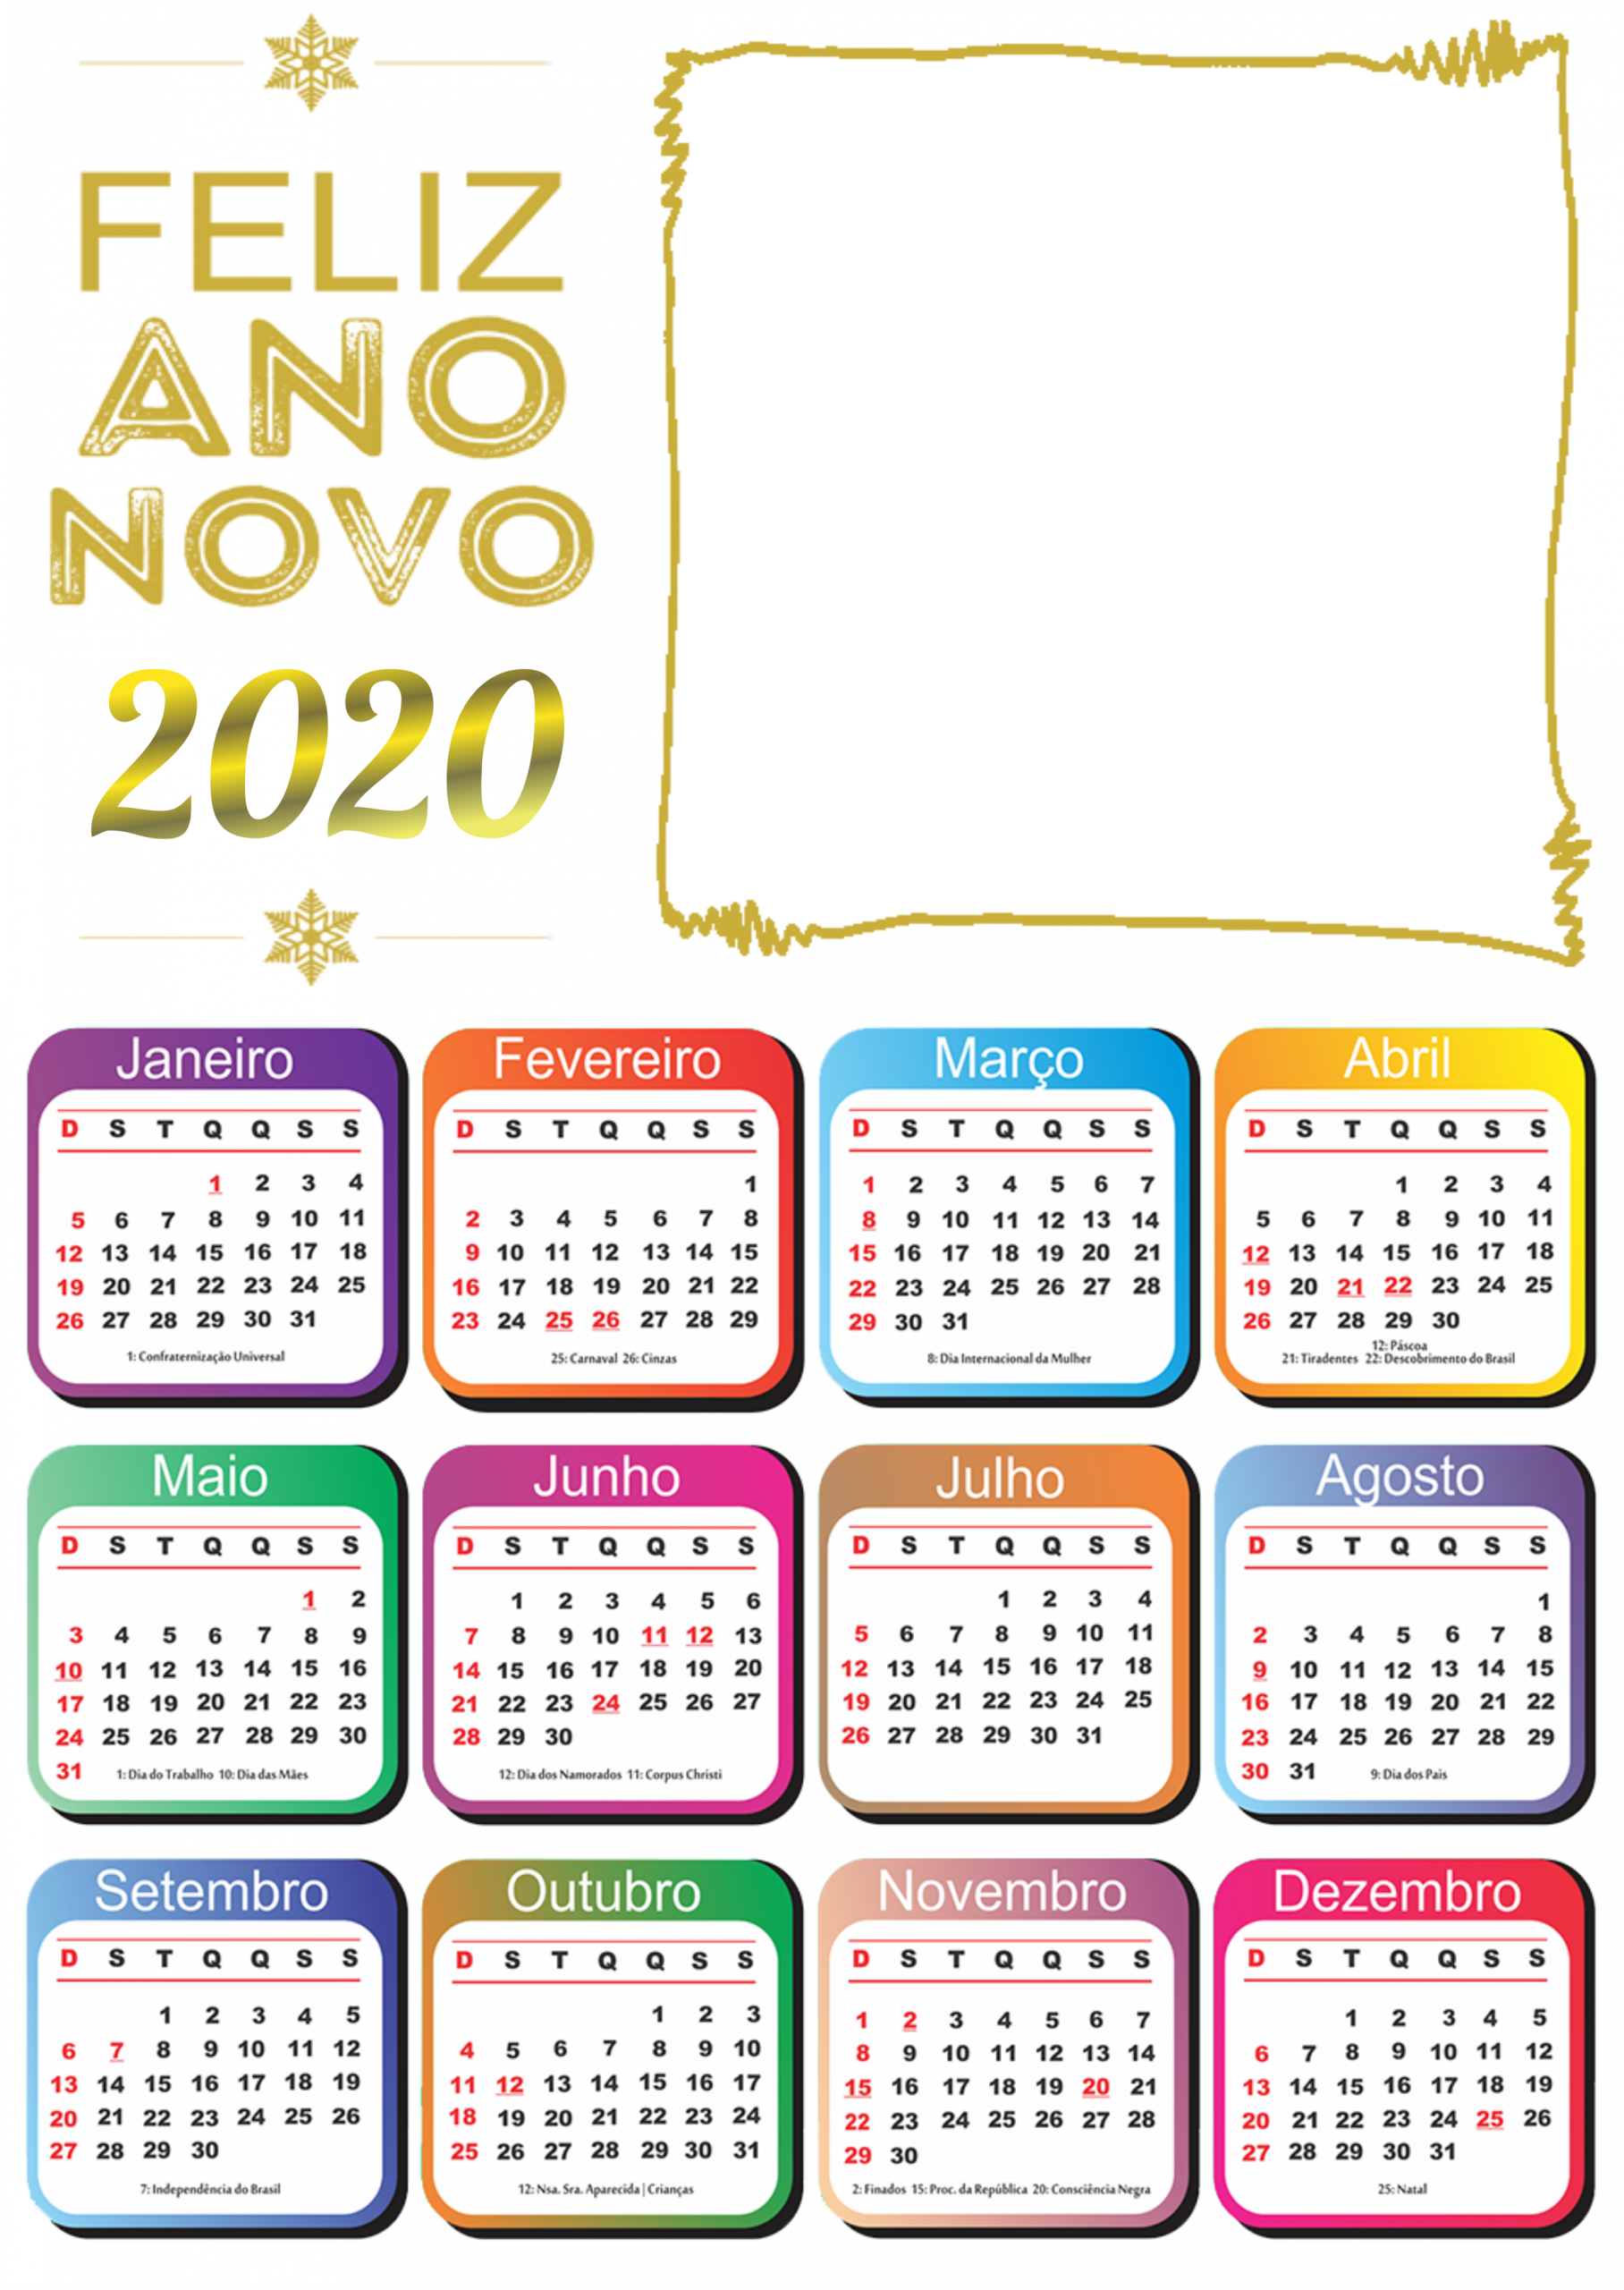 Calendário feliz ano novo 2020 png